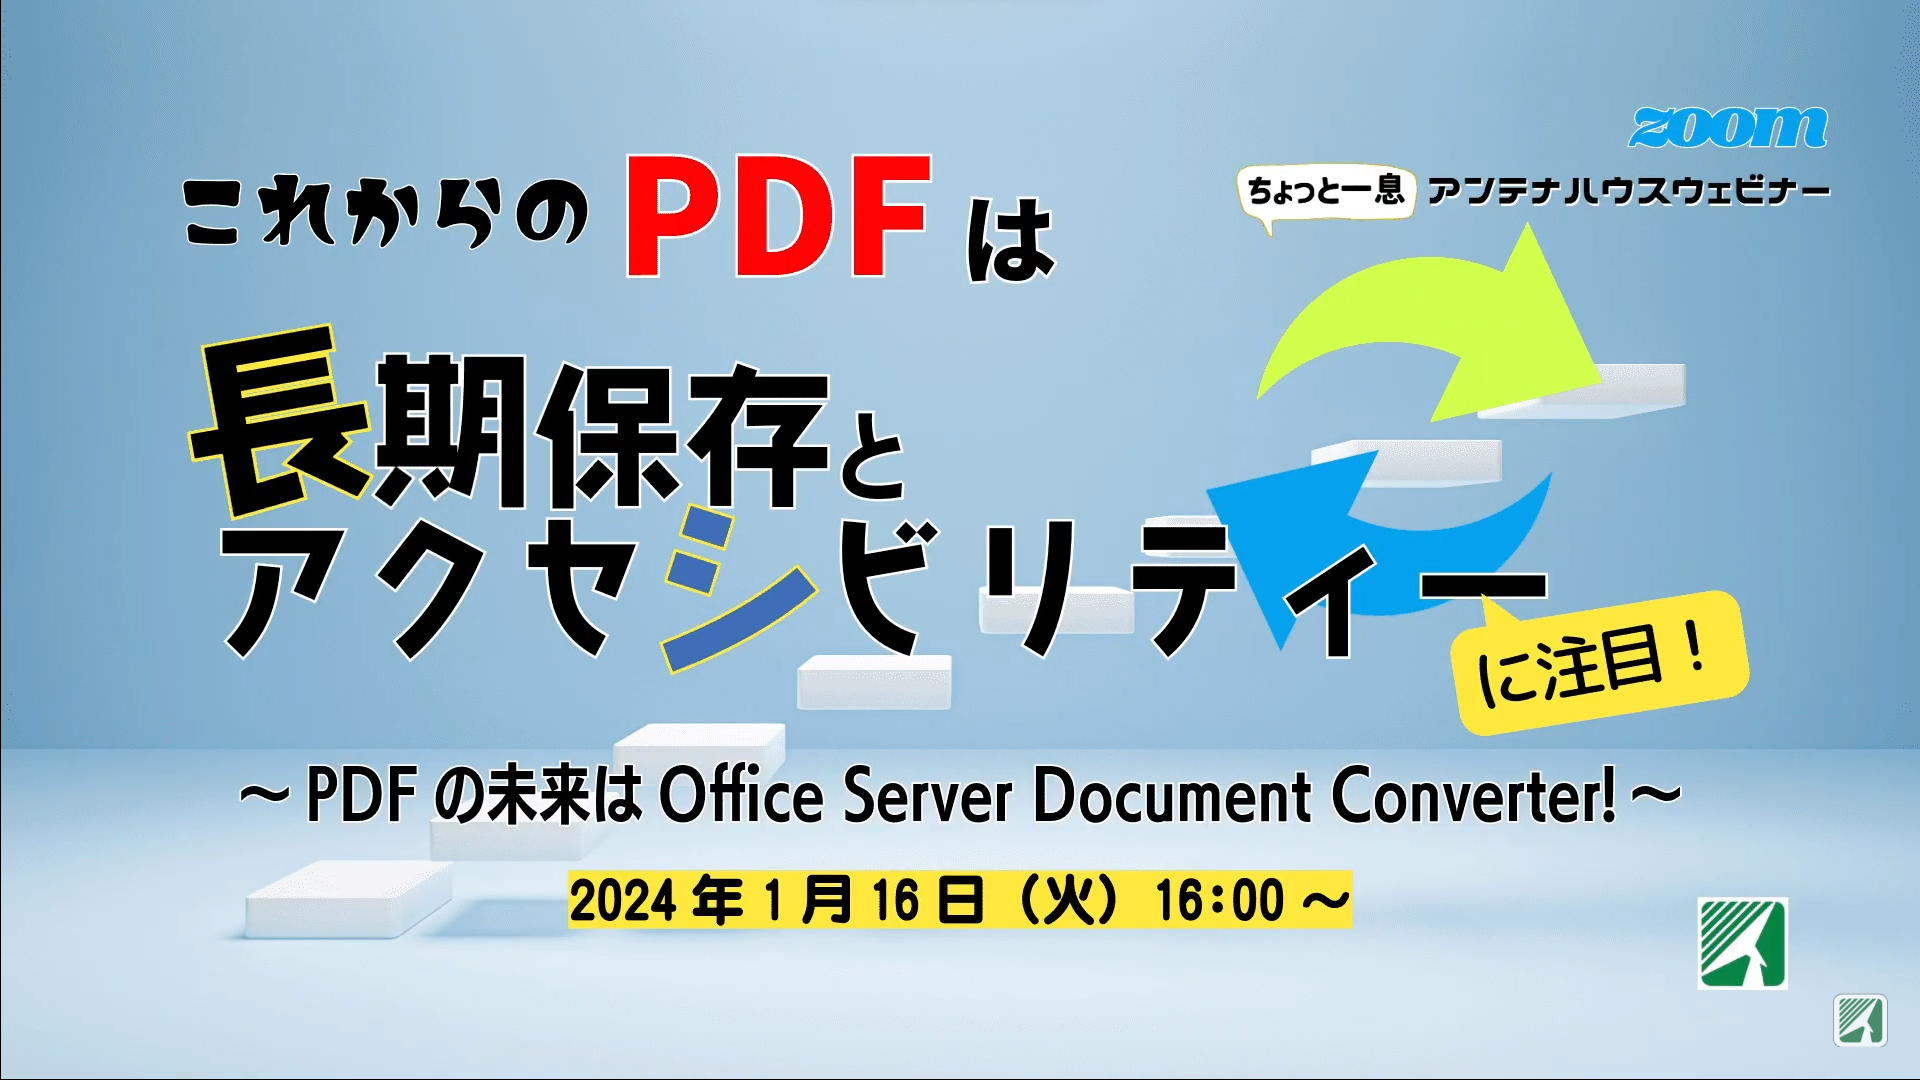 これからのPDFは長期保存とアクセシビリティ―に注目 ～PDFの未来はOffice Server Document Converter!～